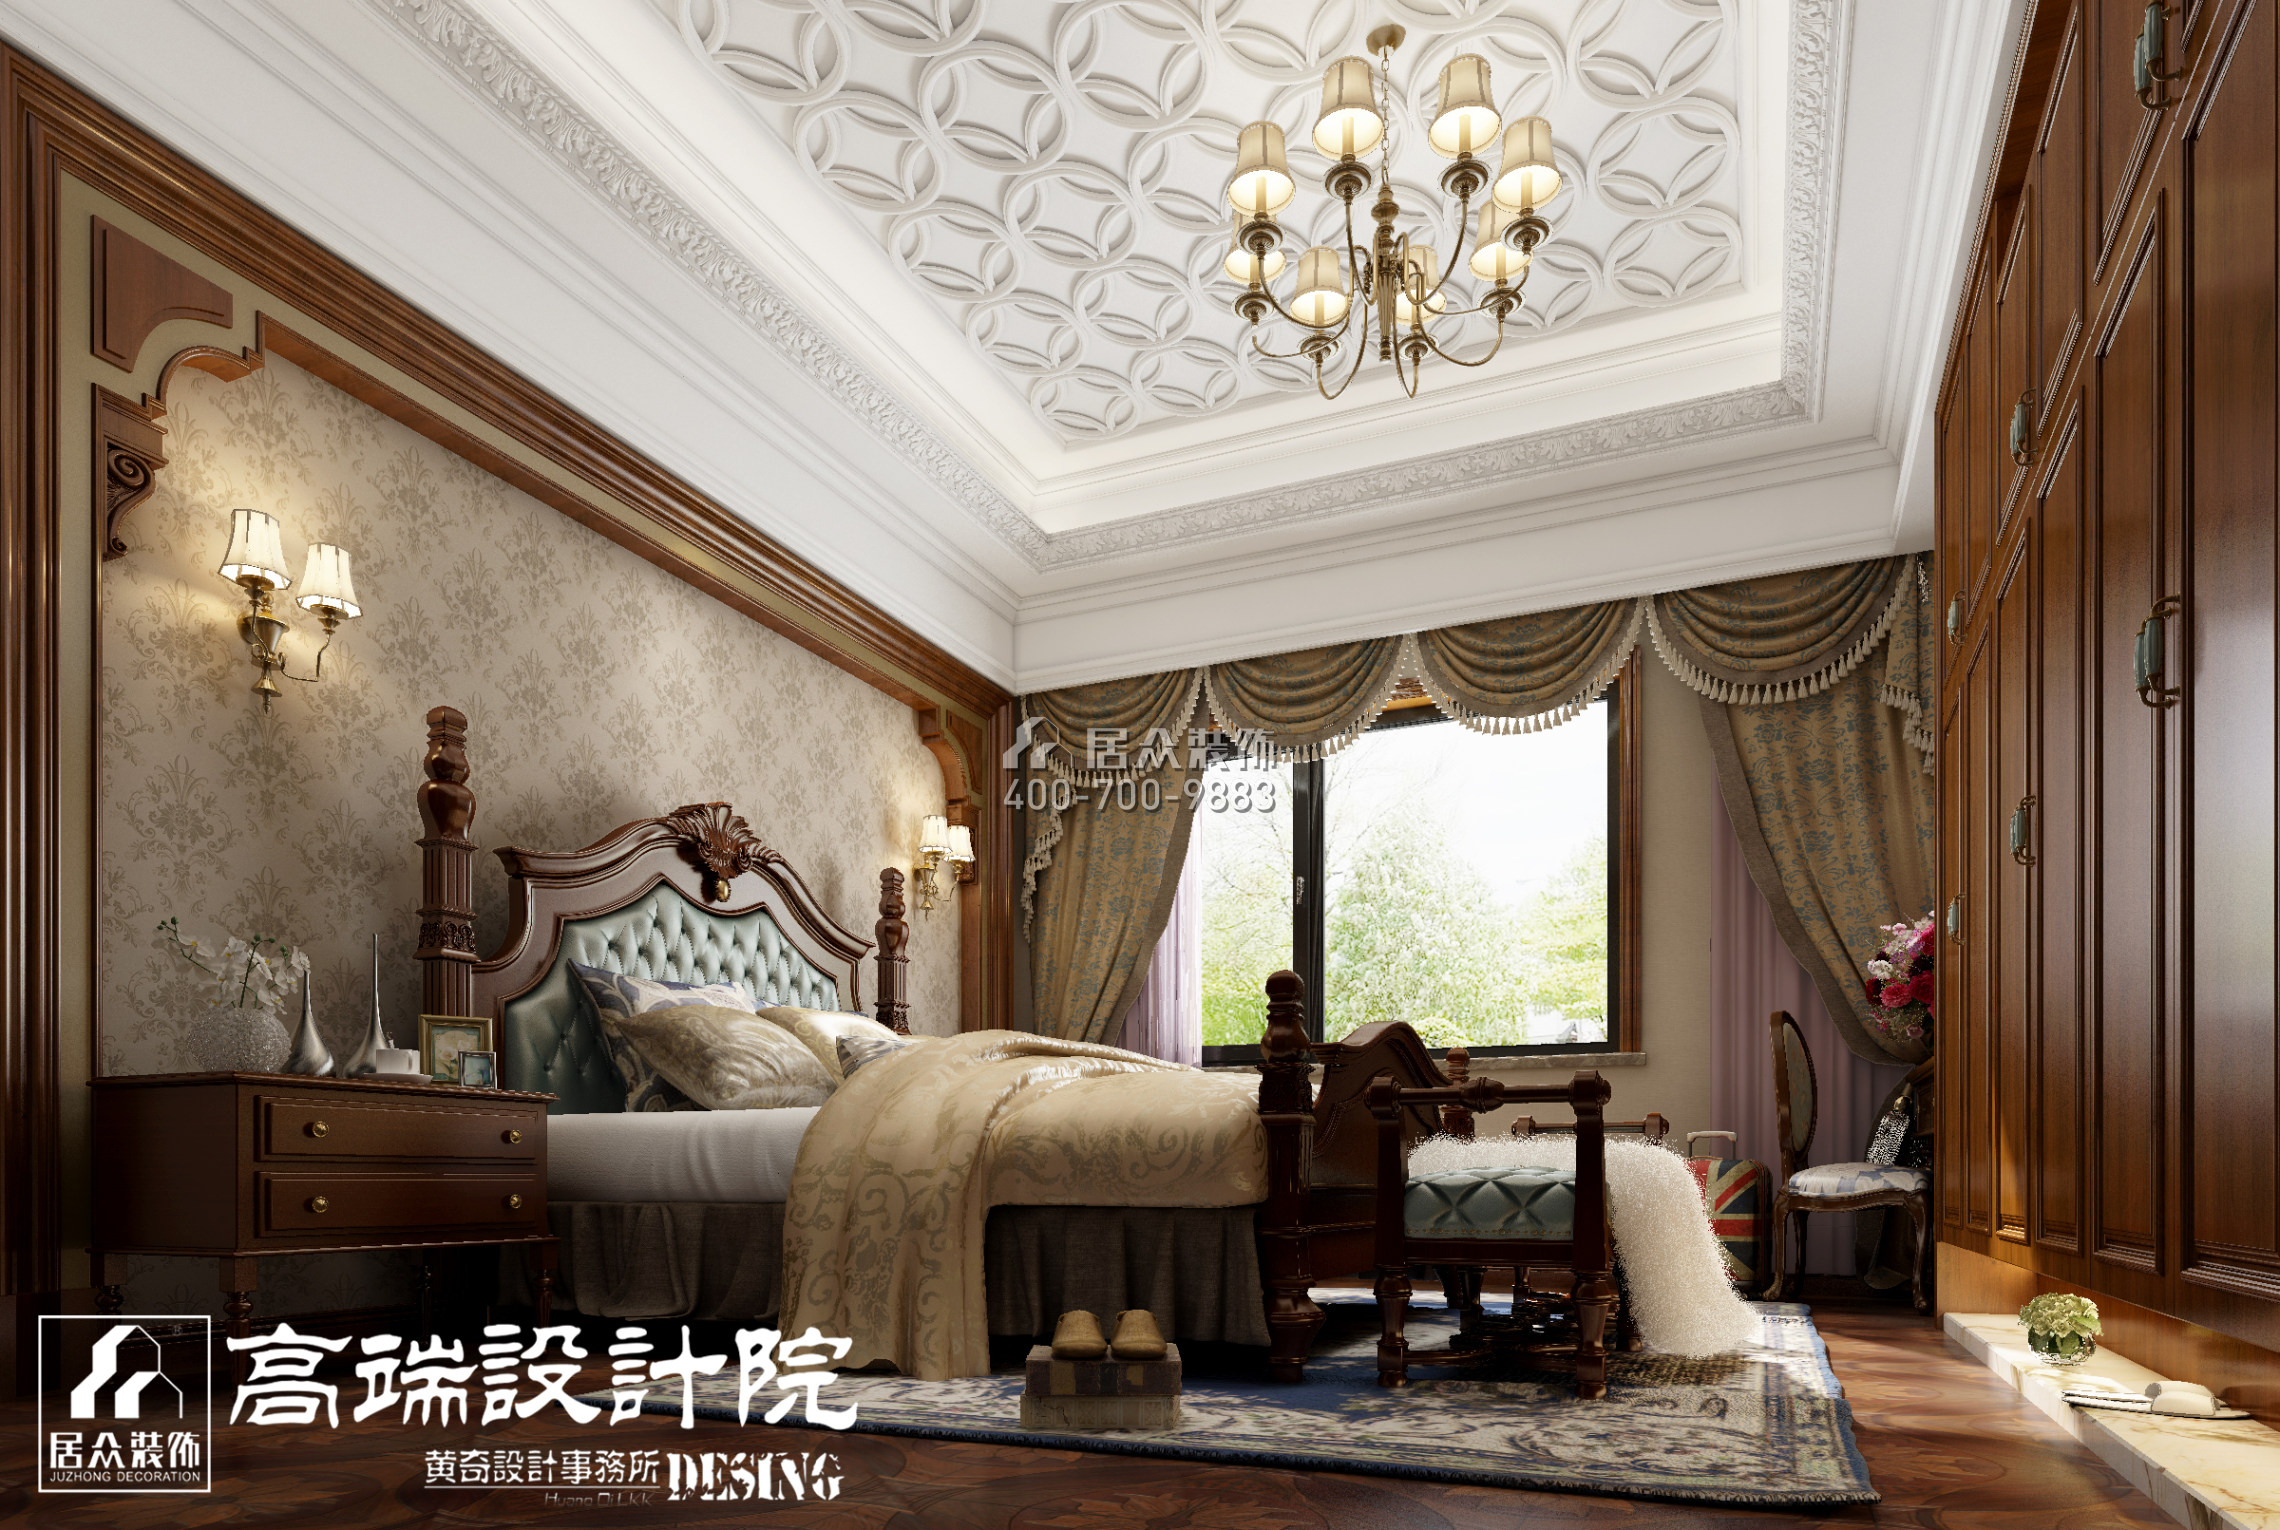 龍湖湘風原著450平方米歐式風格別墅戶型臥室裝修效果圖